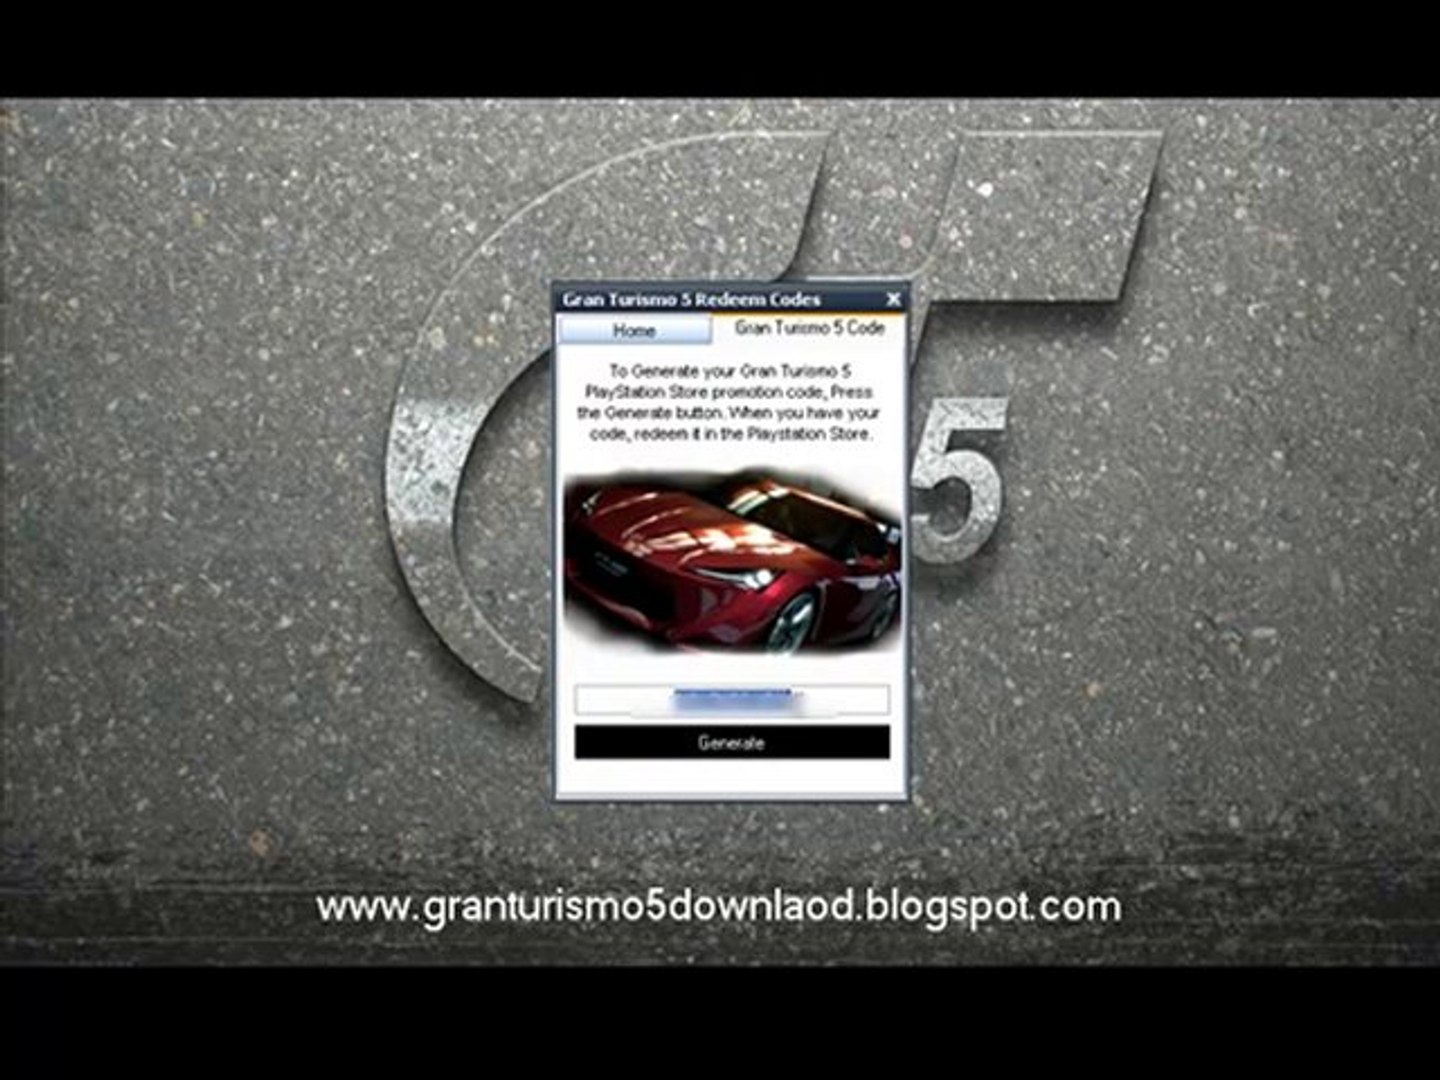 Gran Turismo 5 (PS3) 🚗 Mastermod Install Guide & Brief Overview